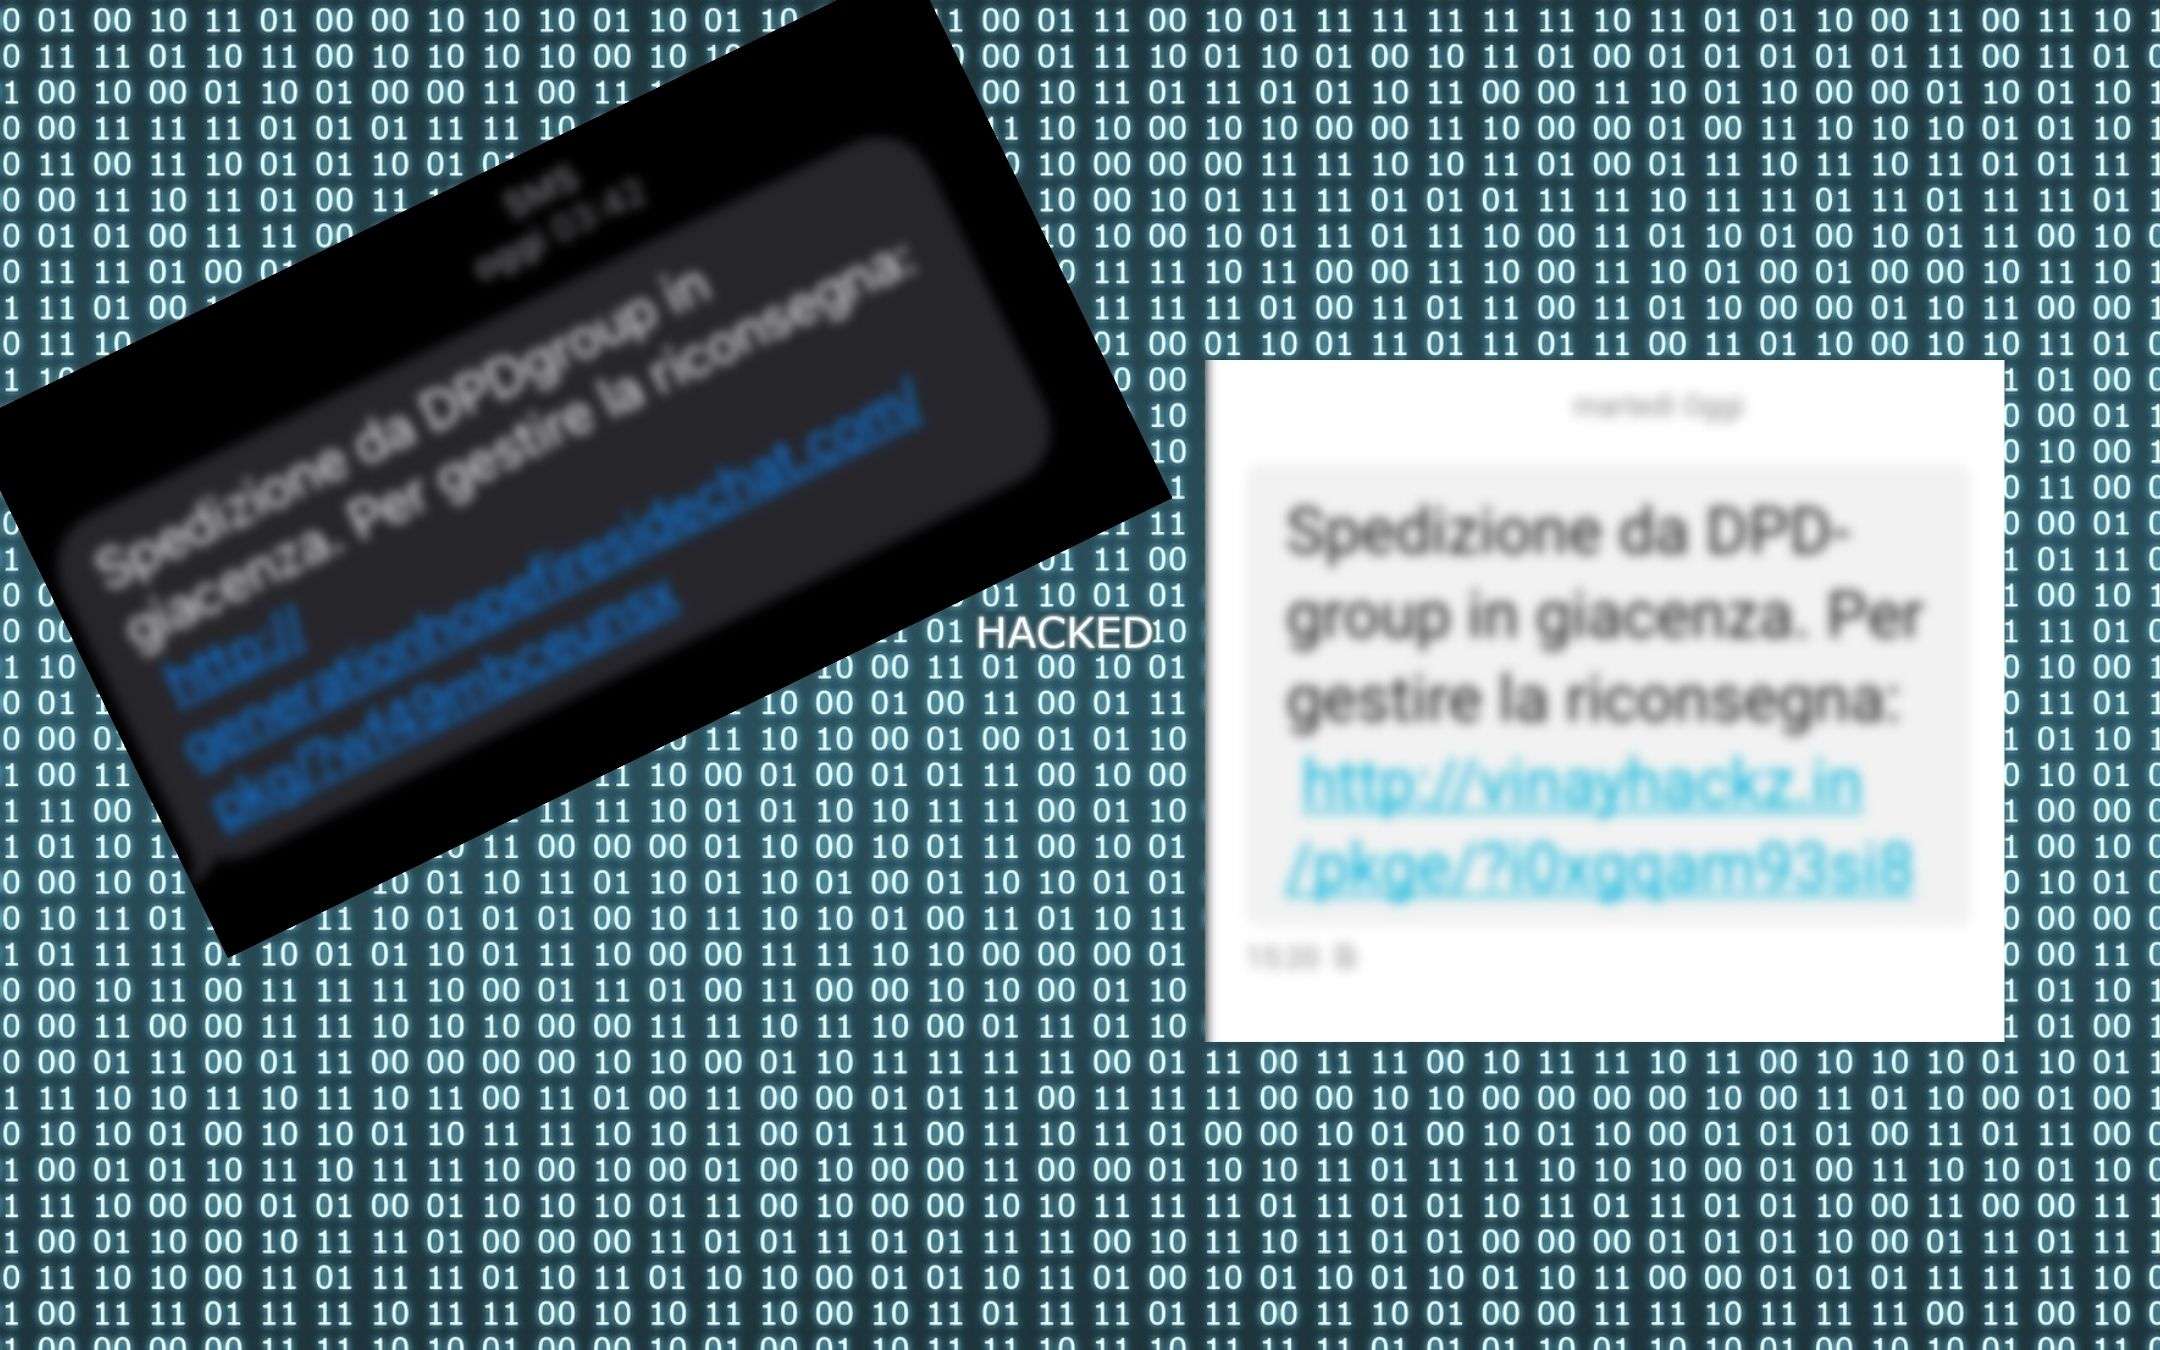 SMS: spedizione da DPDgroup in giacenza, ma è una TRUFFA